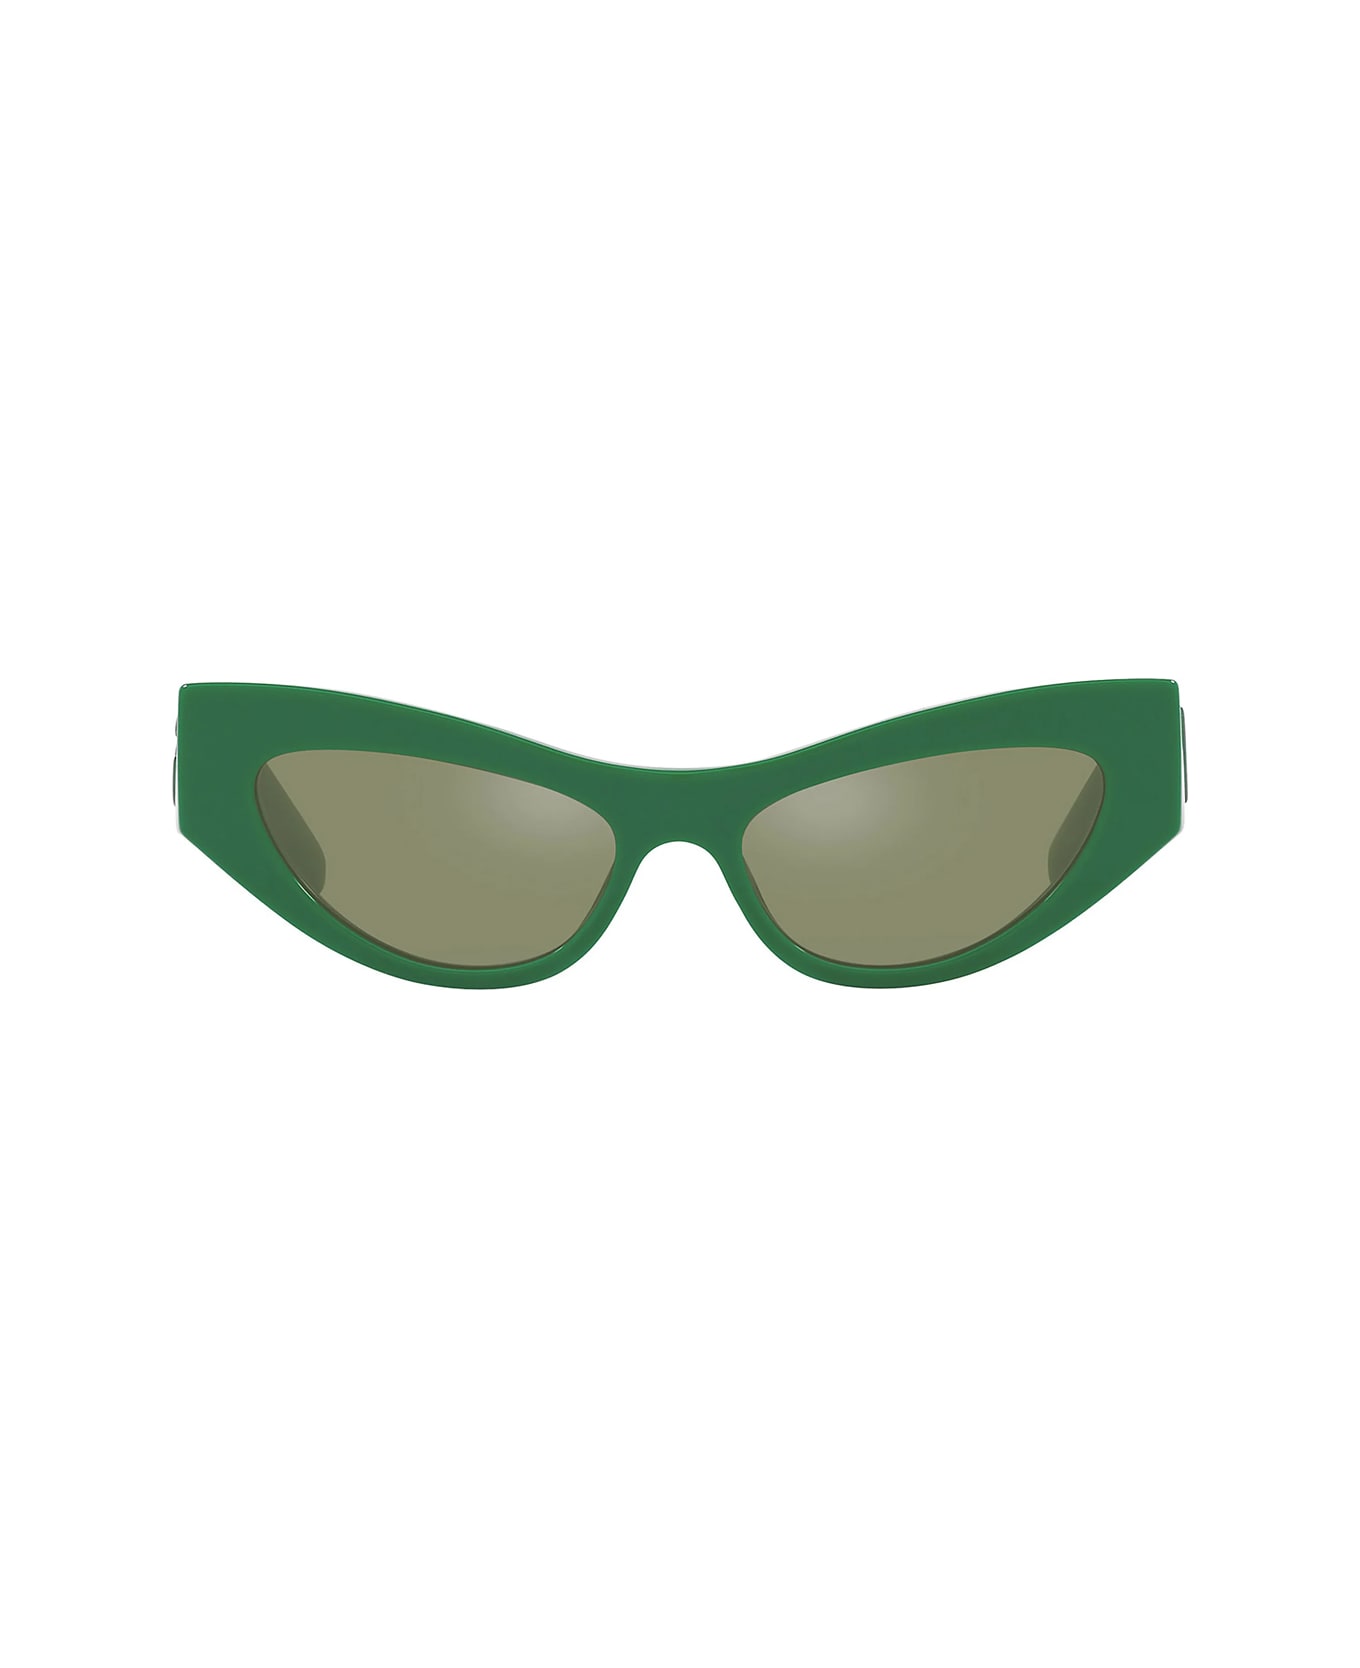 Dolce & Gabbana Eyewear Dg4450 331152 Sunglasses - Verde サングラス